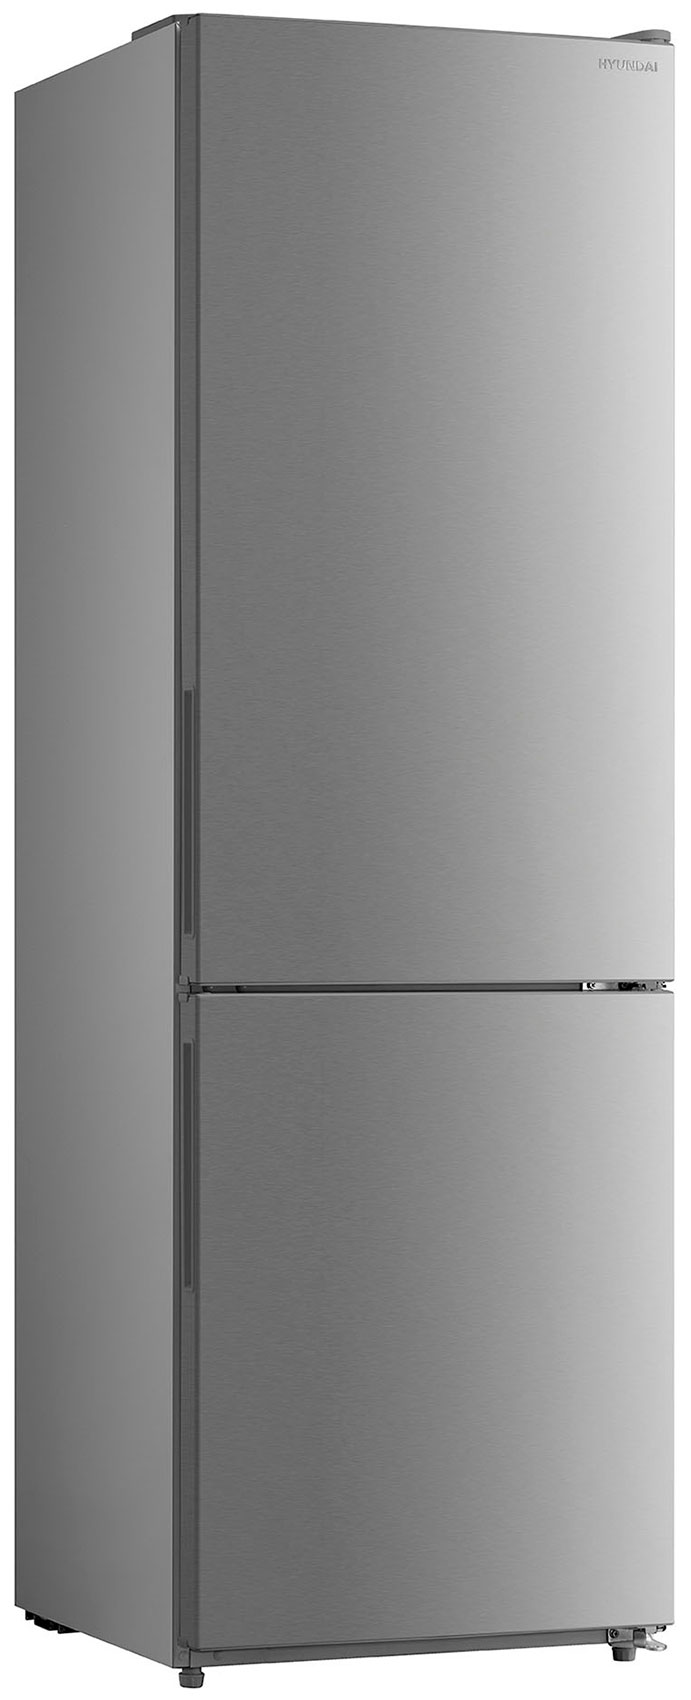 Двухкамерный холодильник Hyundai CC3093FIX нержавеющая сталь холодильник hyundai cc3093fix нержавеющая сталь